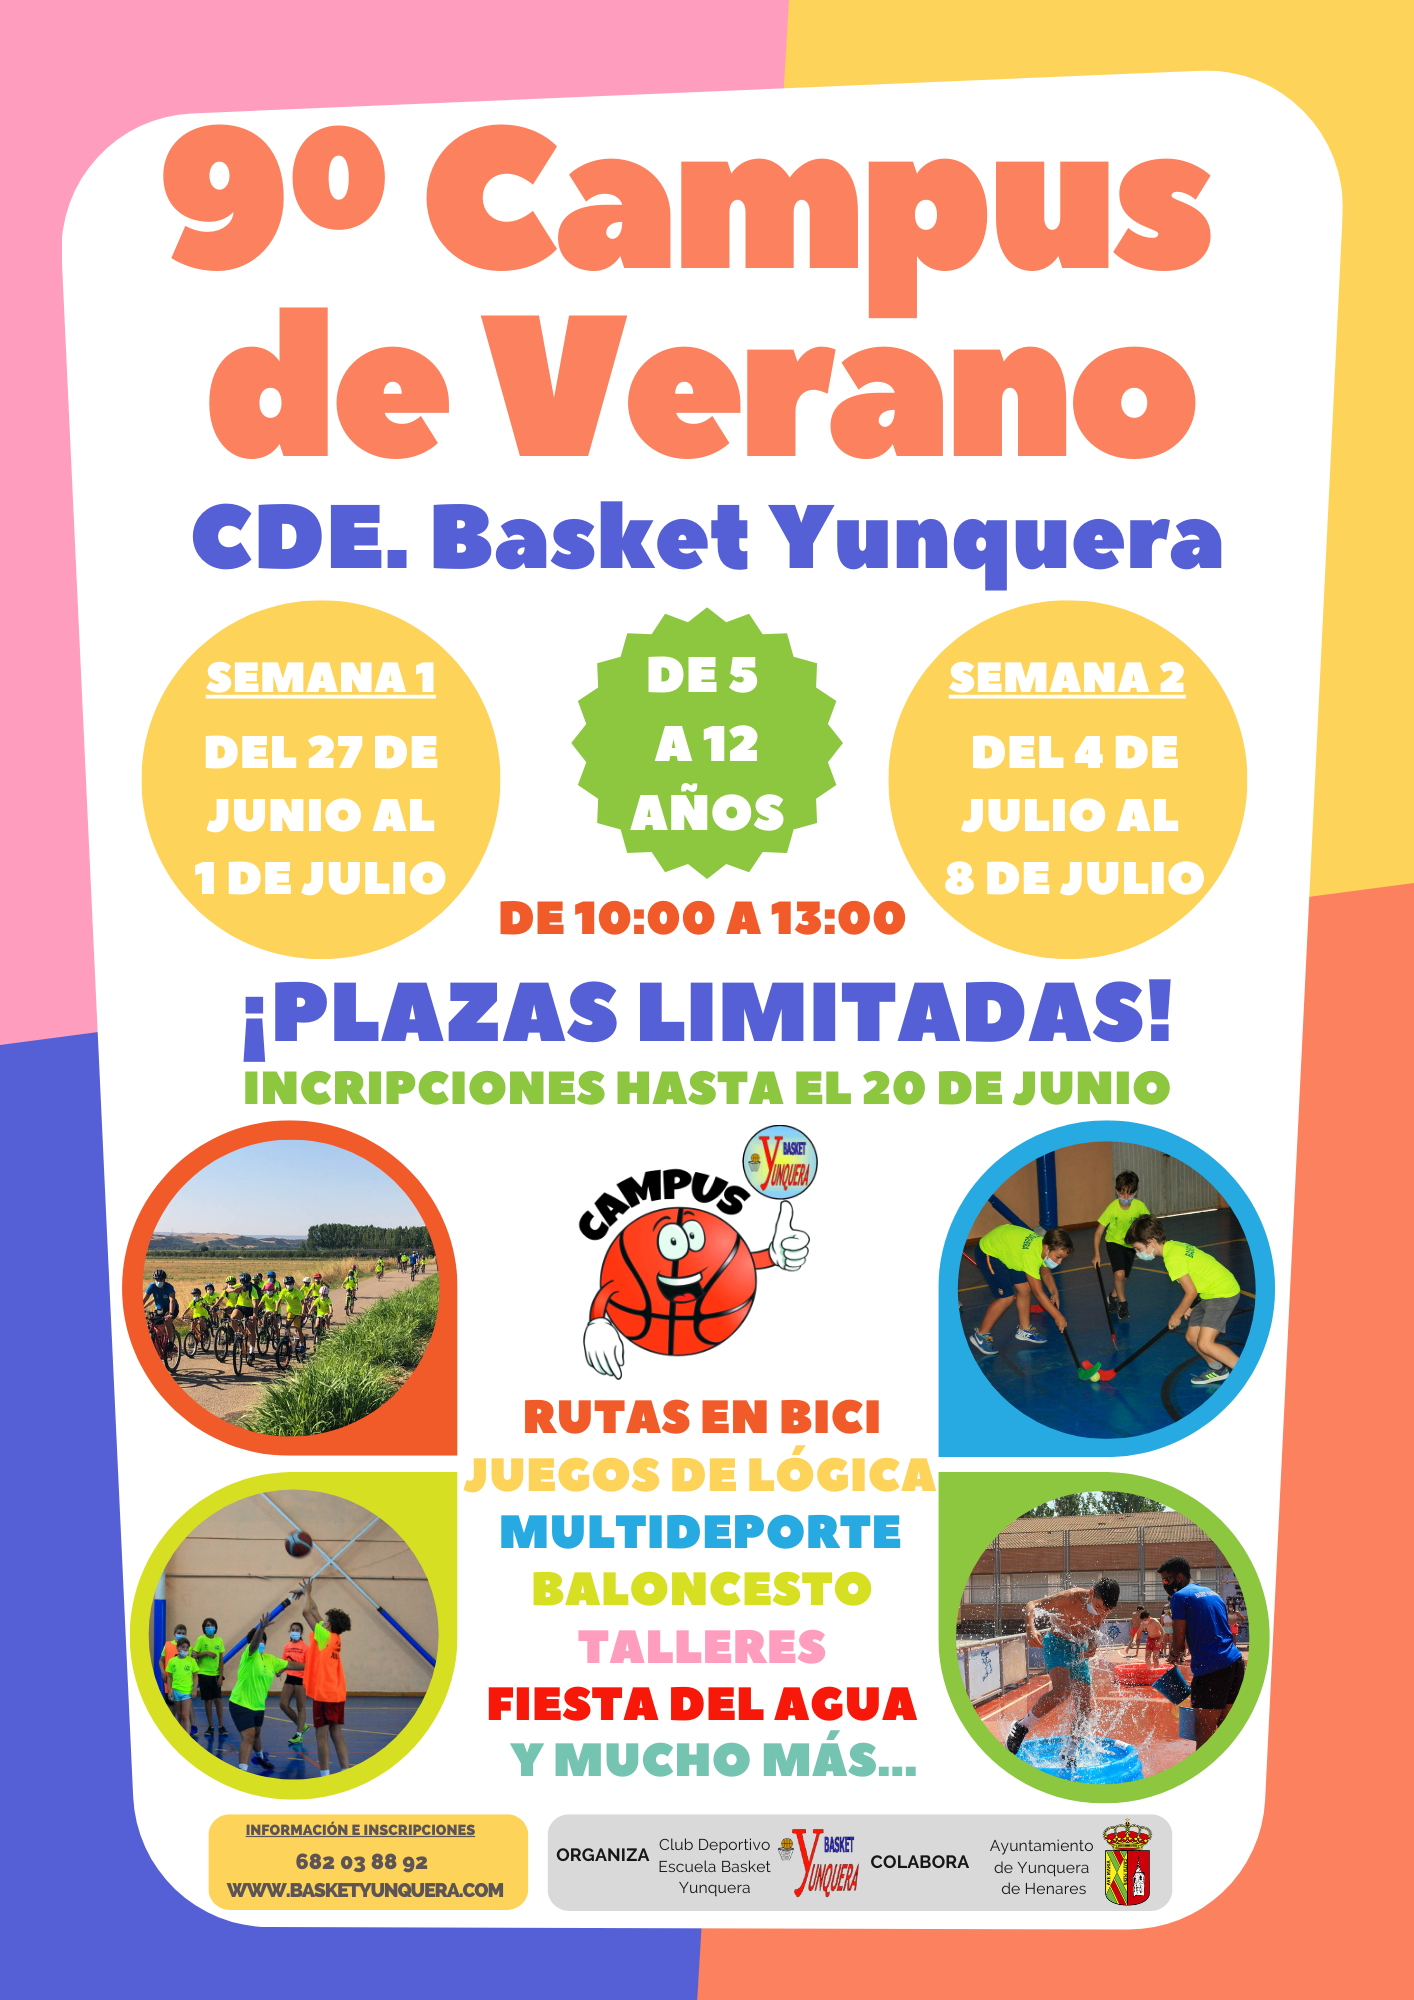 El CDE Basket Yunquera prepara su 9º Campus de Verano